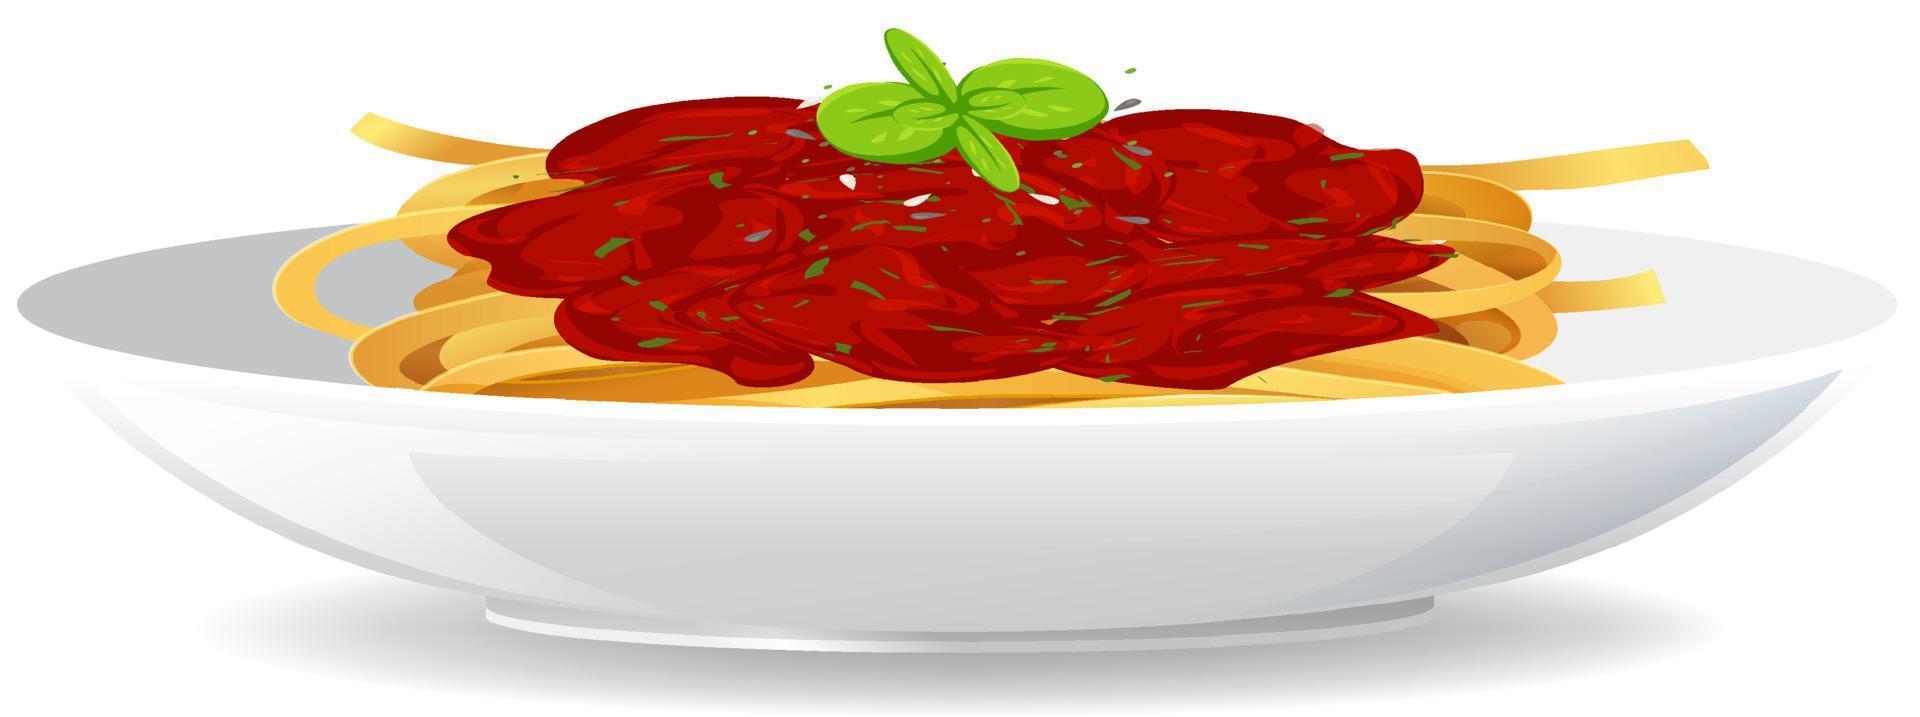 spaghetti alla bolognese con salsa di pomodoro vettore